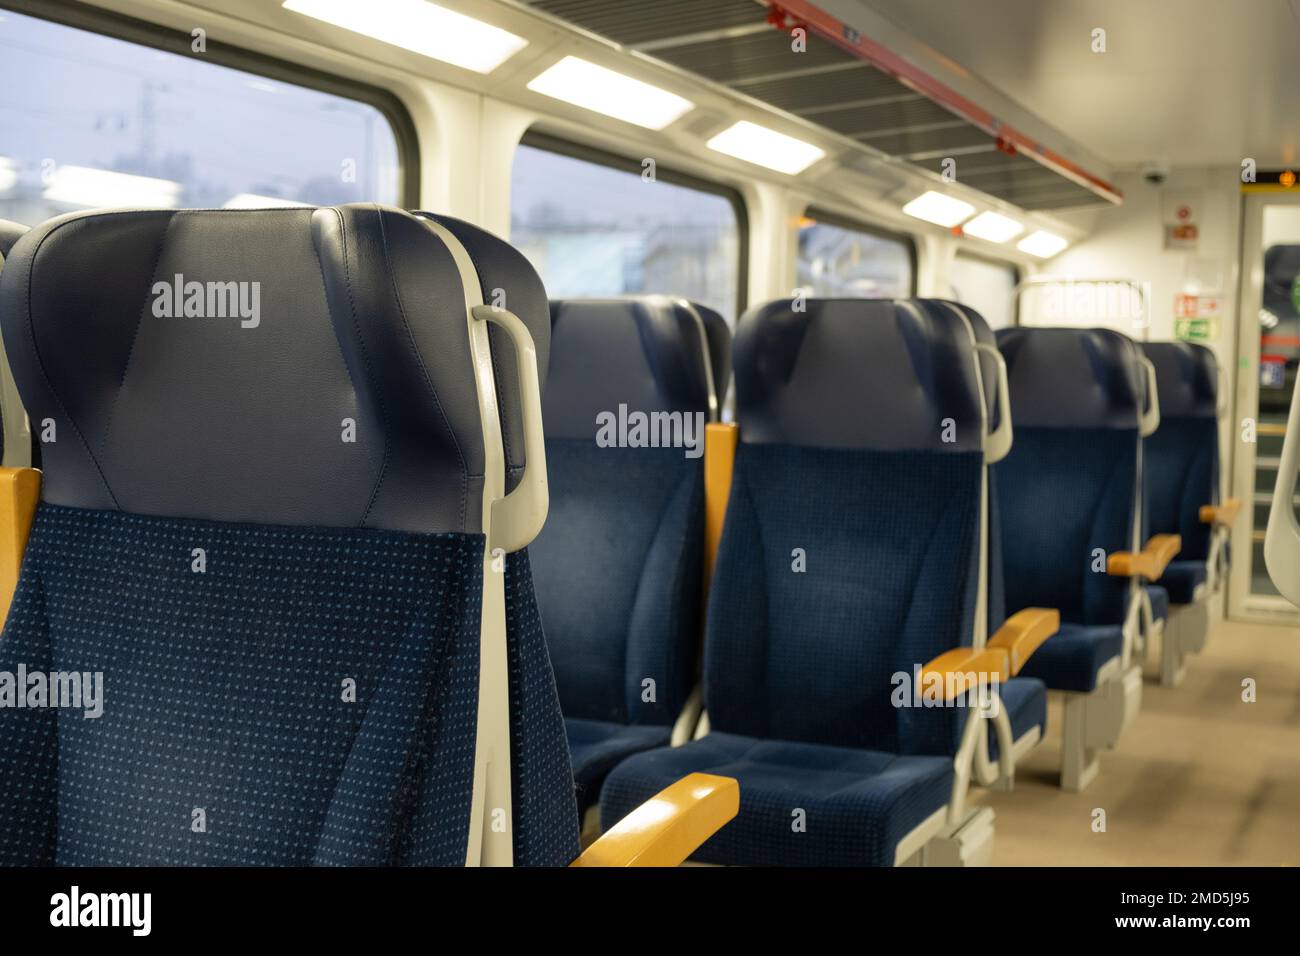 Moderner Personenzug für lange und kurze Entfernungen in Europa. Leeres Innere des Zugwaggons mit leeren blauen Sitzen für einen komfortablen Passagier Stockfoto